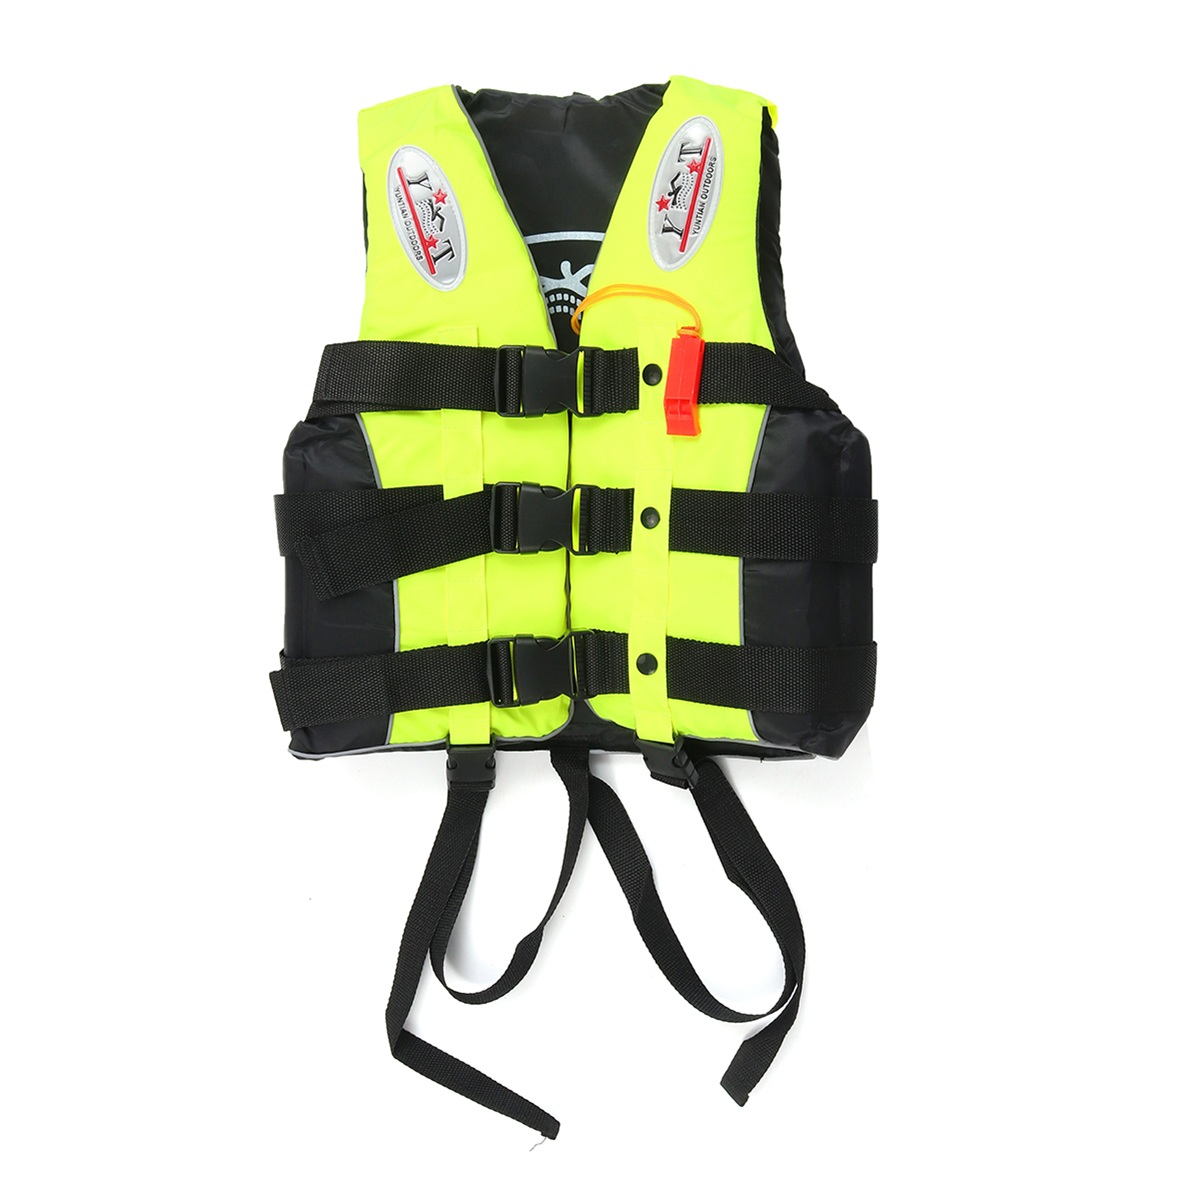 

Портативный спасательный жилет Oxford Плавательный Рыбалка Лодка Kayak Buoyancy Aid Vest-M / L / XL